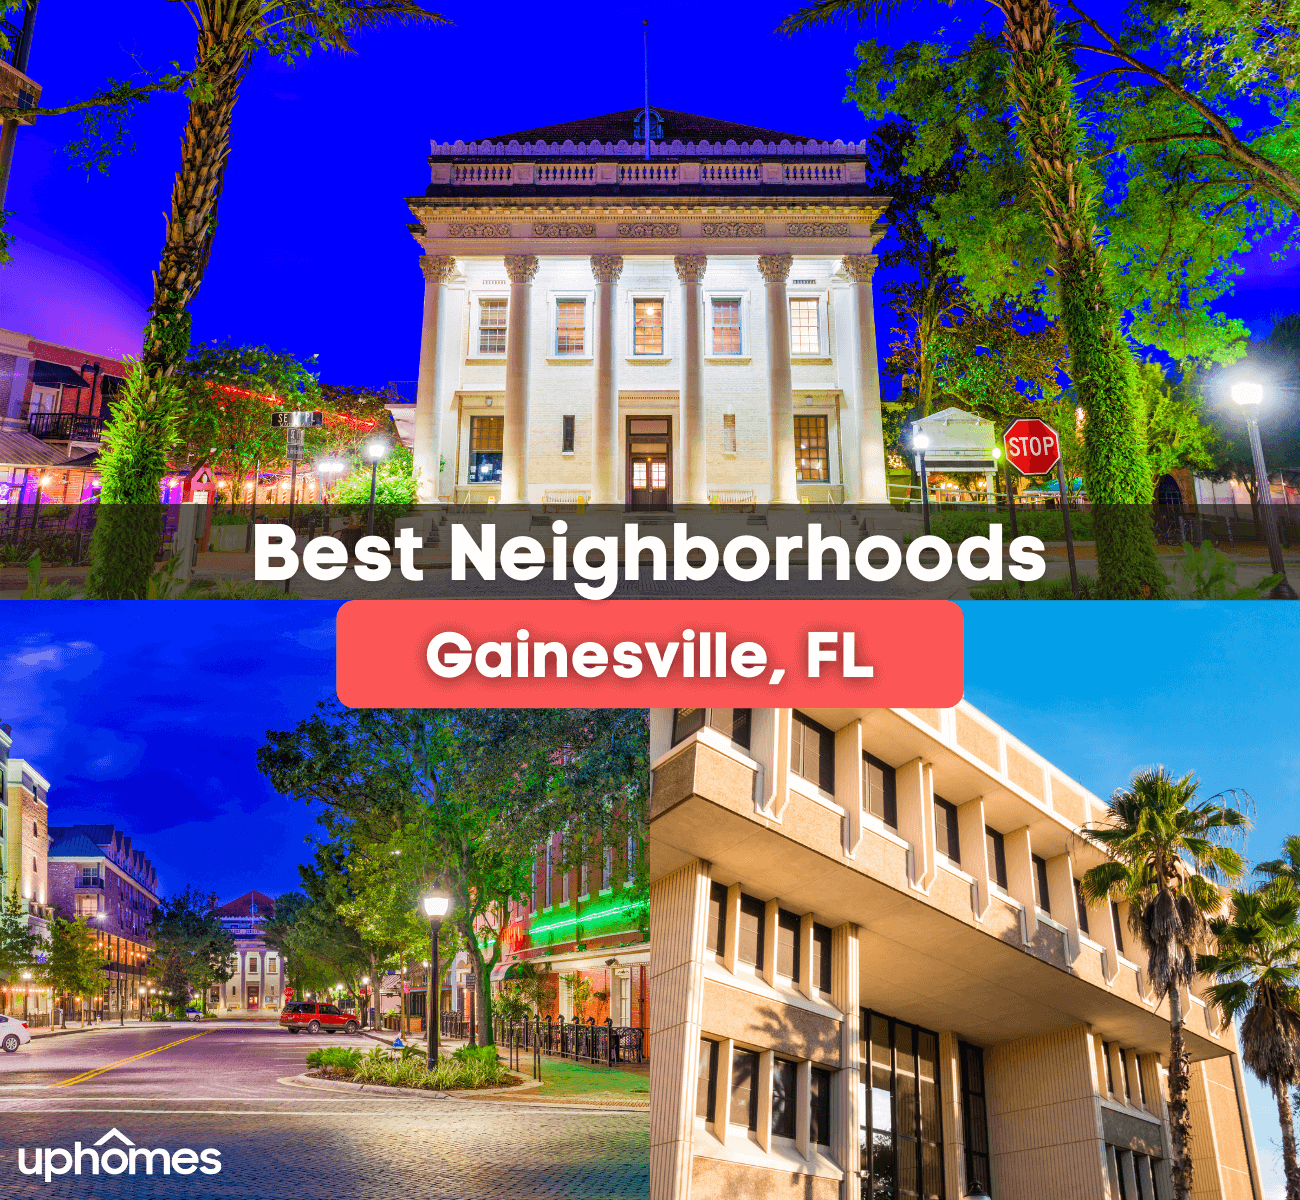 Best Neighborhoods in Gainesville, Florida - Here are the best neighborhoods to live in Gainesville, Florida